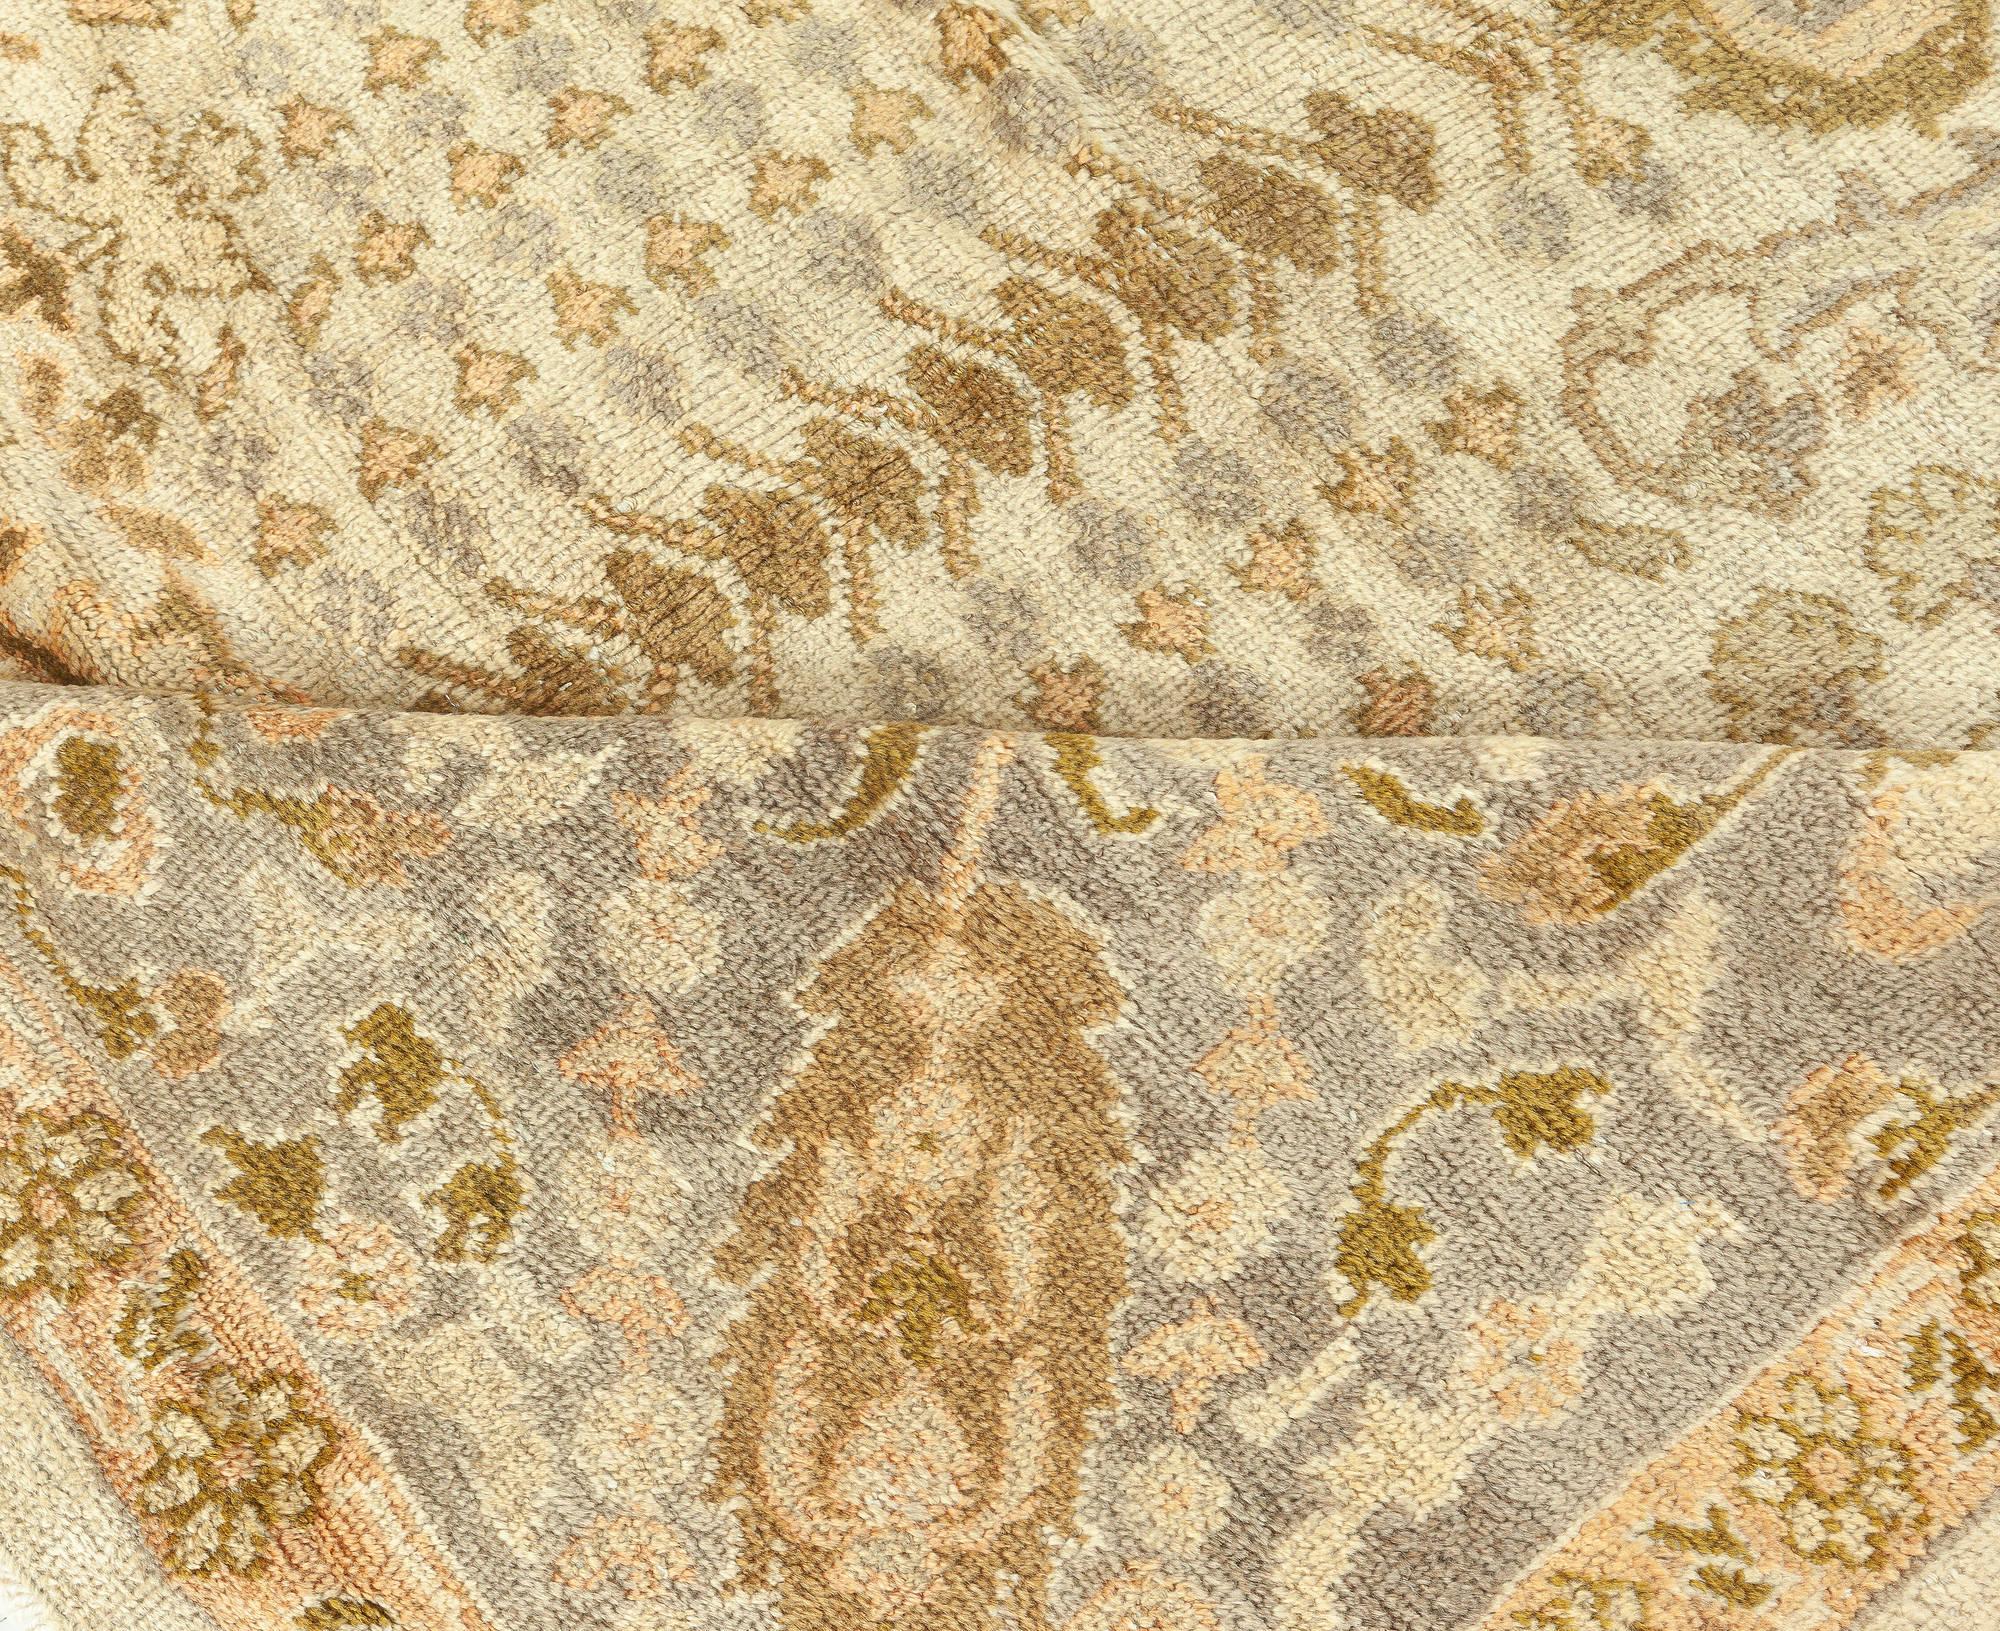 Persischer Sultanabad-Teppich des frühen 20. Jahrhunderts Braun, Beige, Taupe Handgewebte Wolle
Größe: 11'4